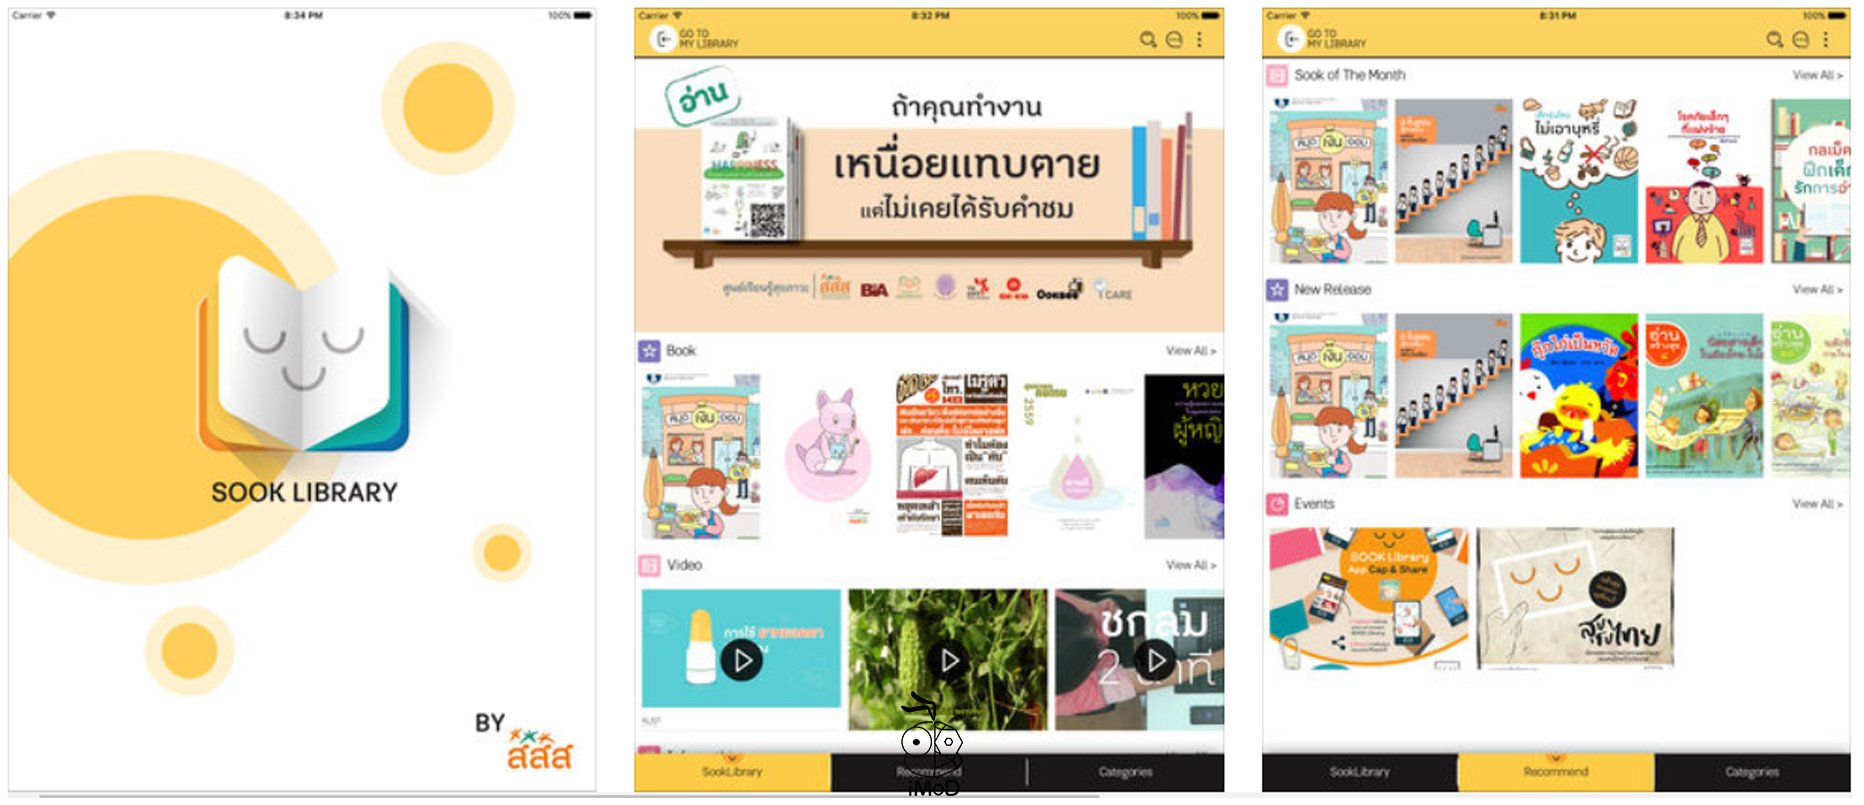 ชวนอ่านหนังสือสุขภาพออนไลน์กั SOOK Library thaihealth